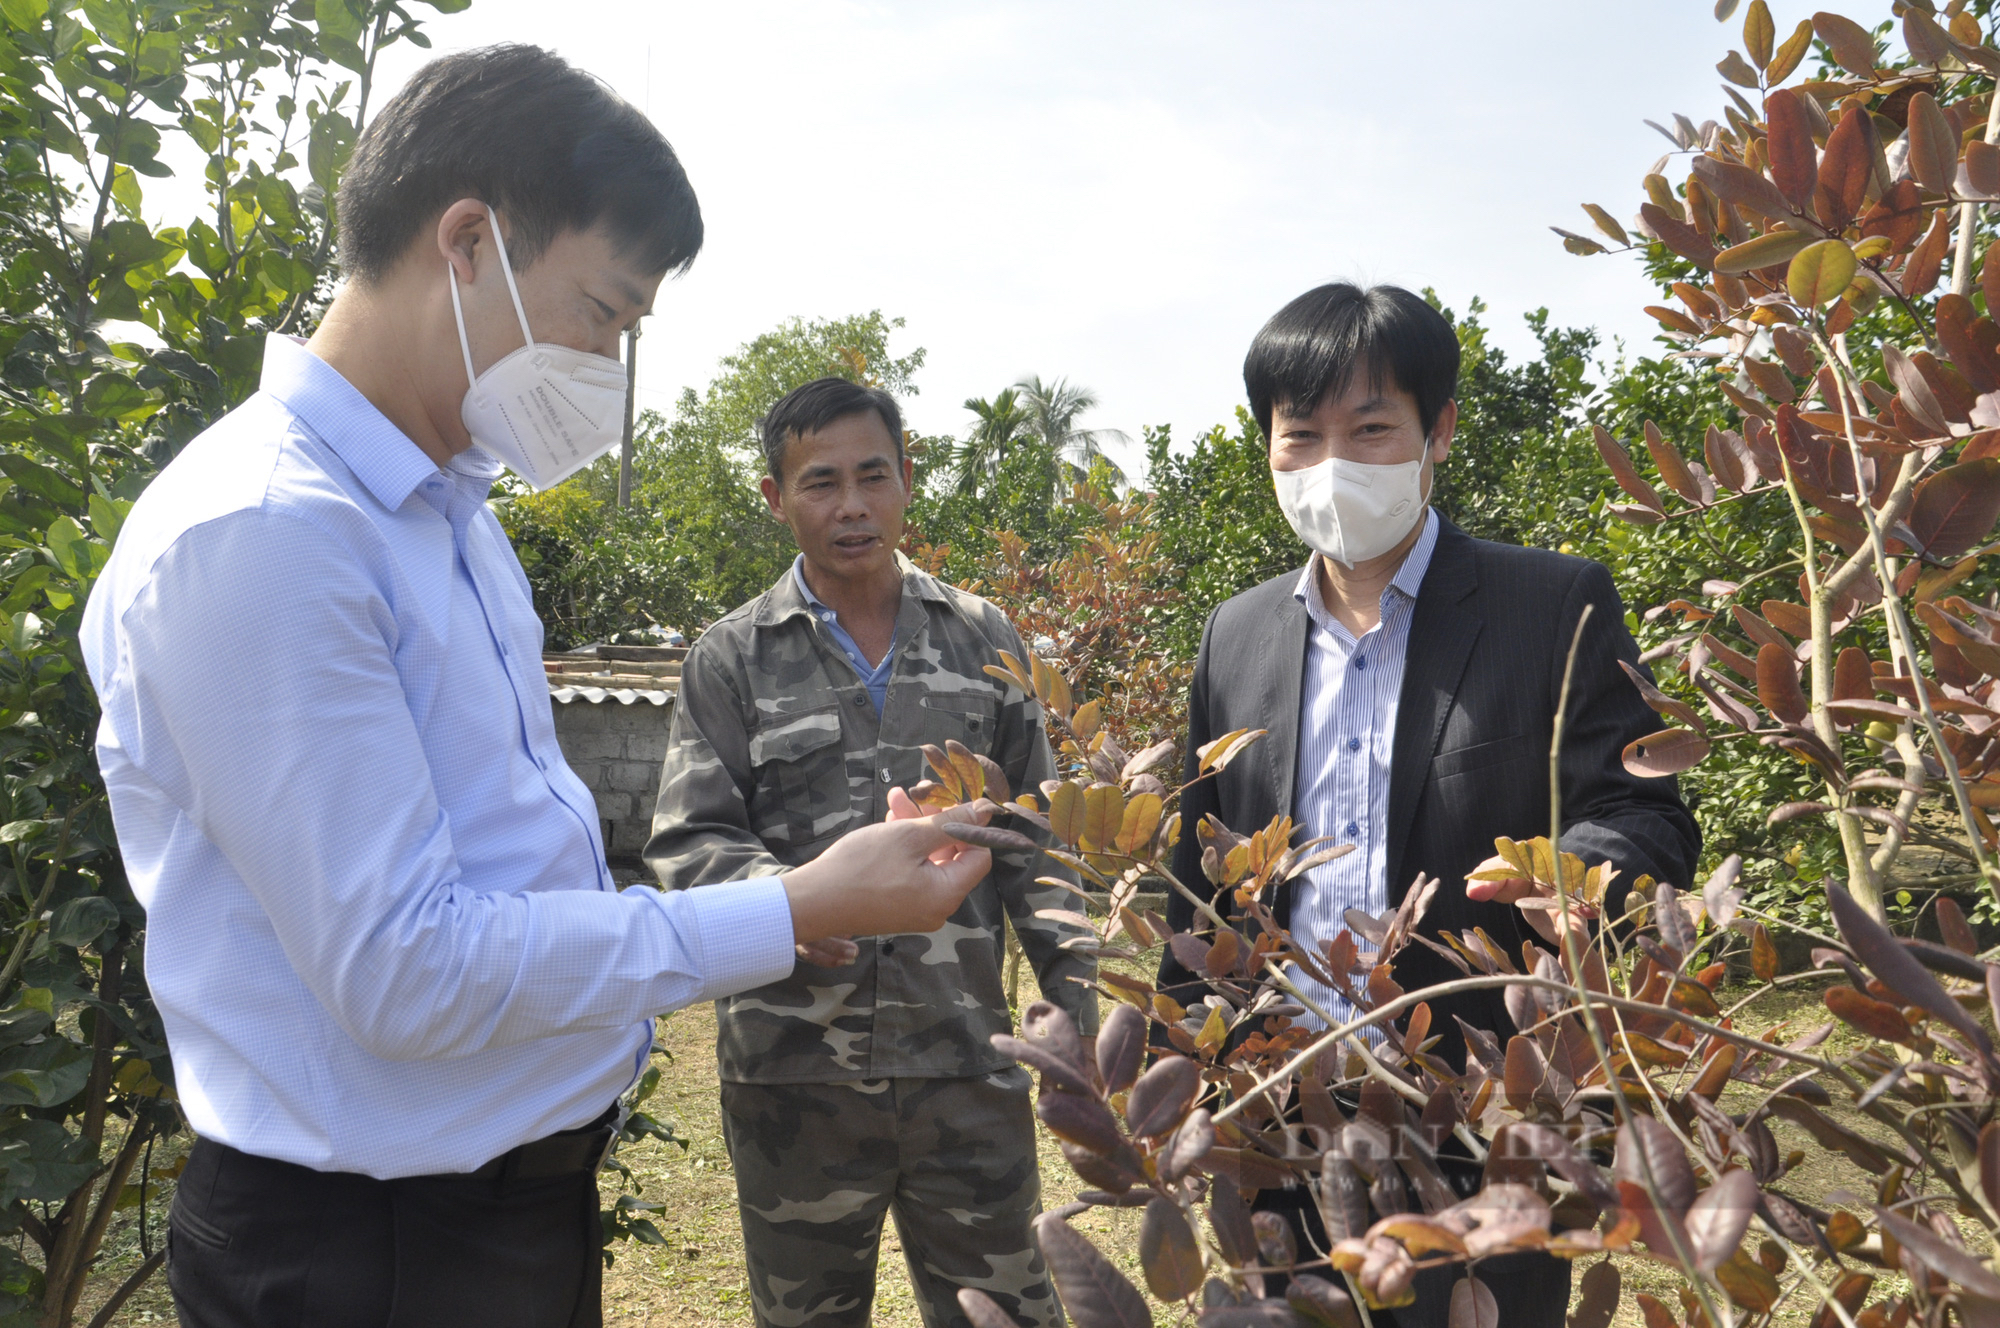 Phó Chủ tịch Hội Nông dân Việt Nam thăm mô hình ở Đông Triều, ấn tượng với xây dựng NTM nơi đây - Ảnh 6.